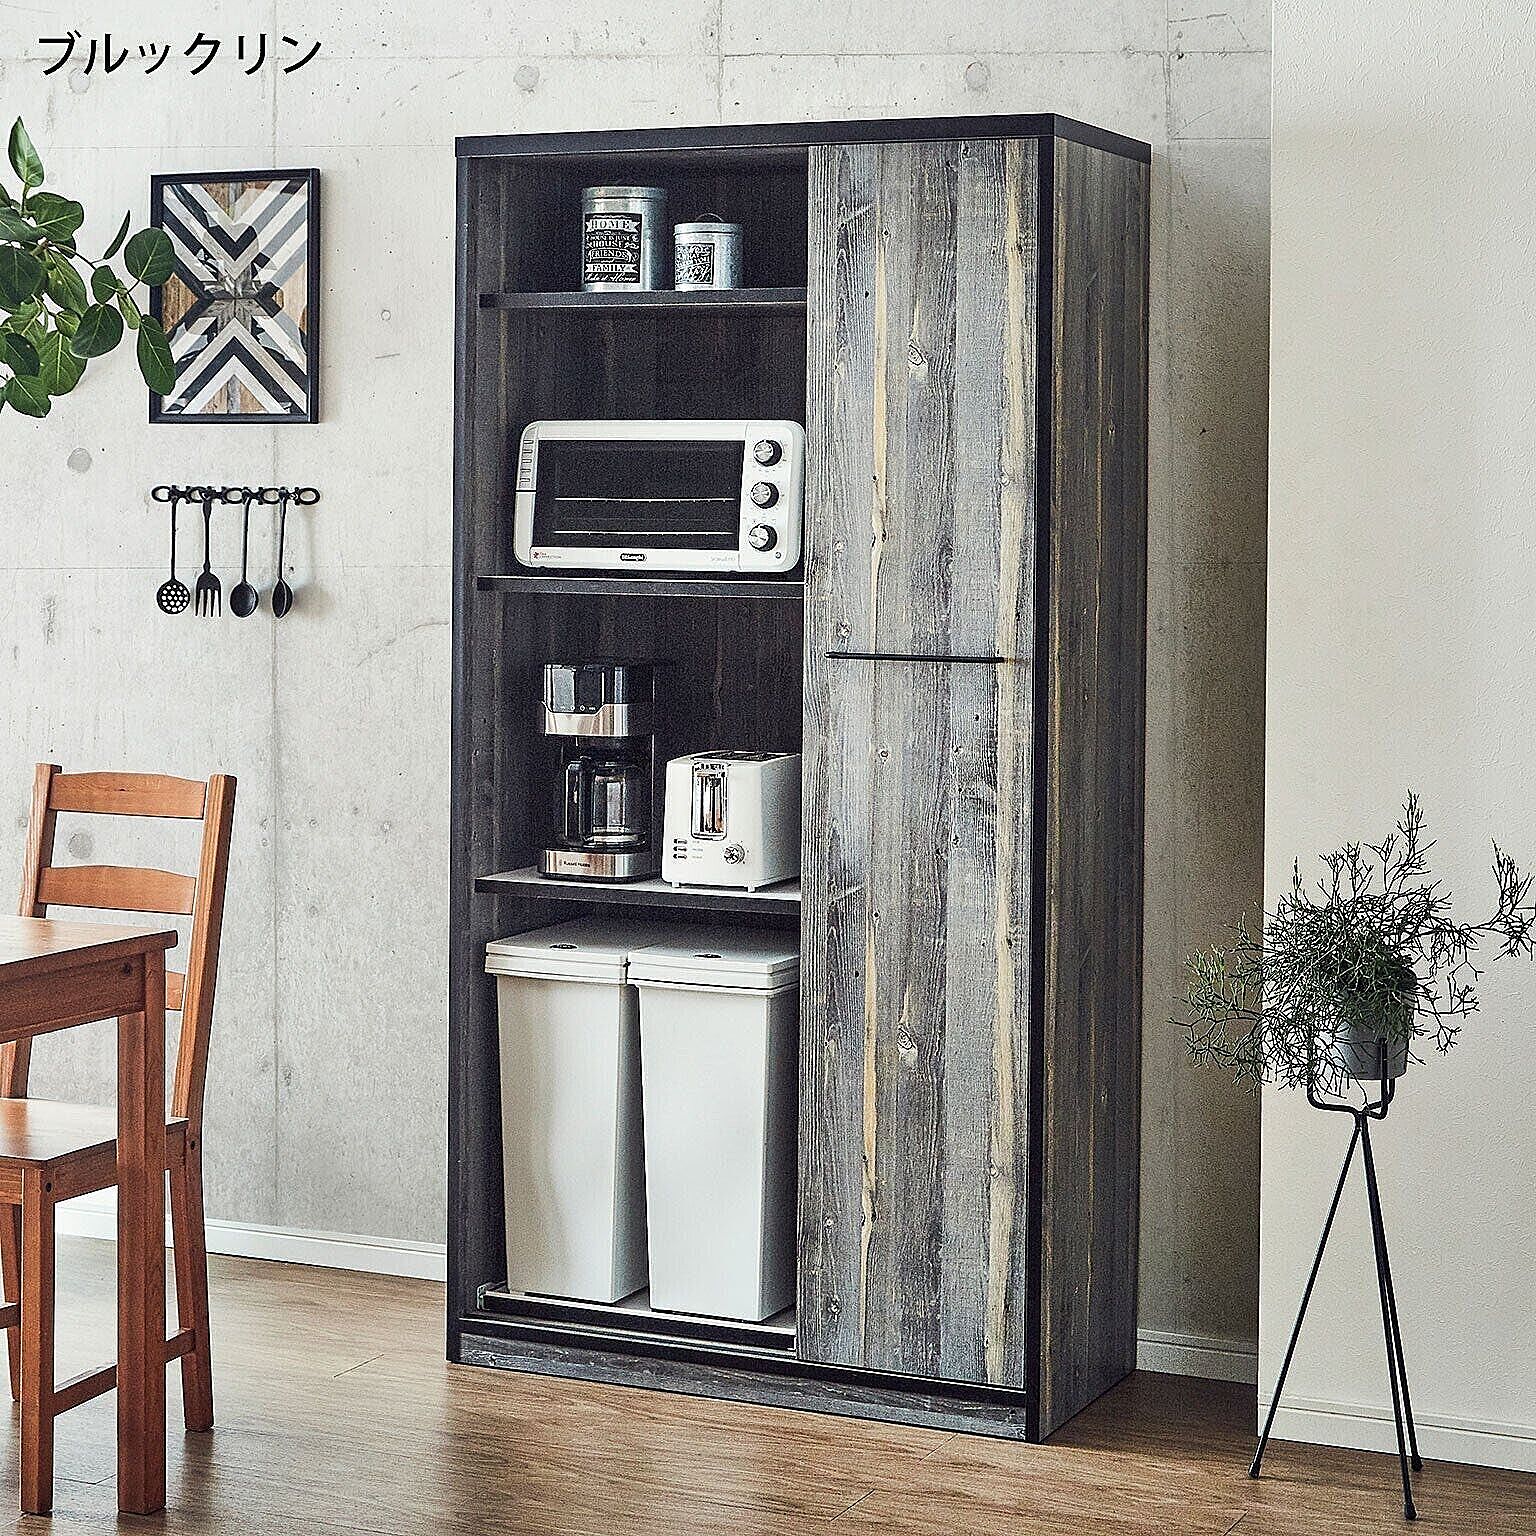 食器棚 キッチンボード レンジボード 引き戸 ゴミ箱 L.A. 幅92.7cm 完成品 キッチン収納 日本製